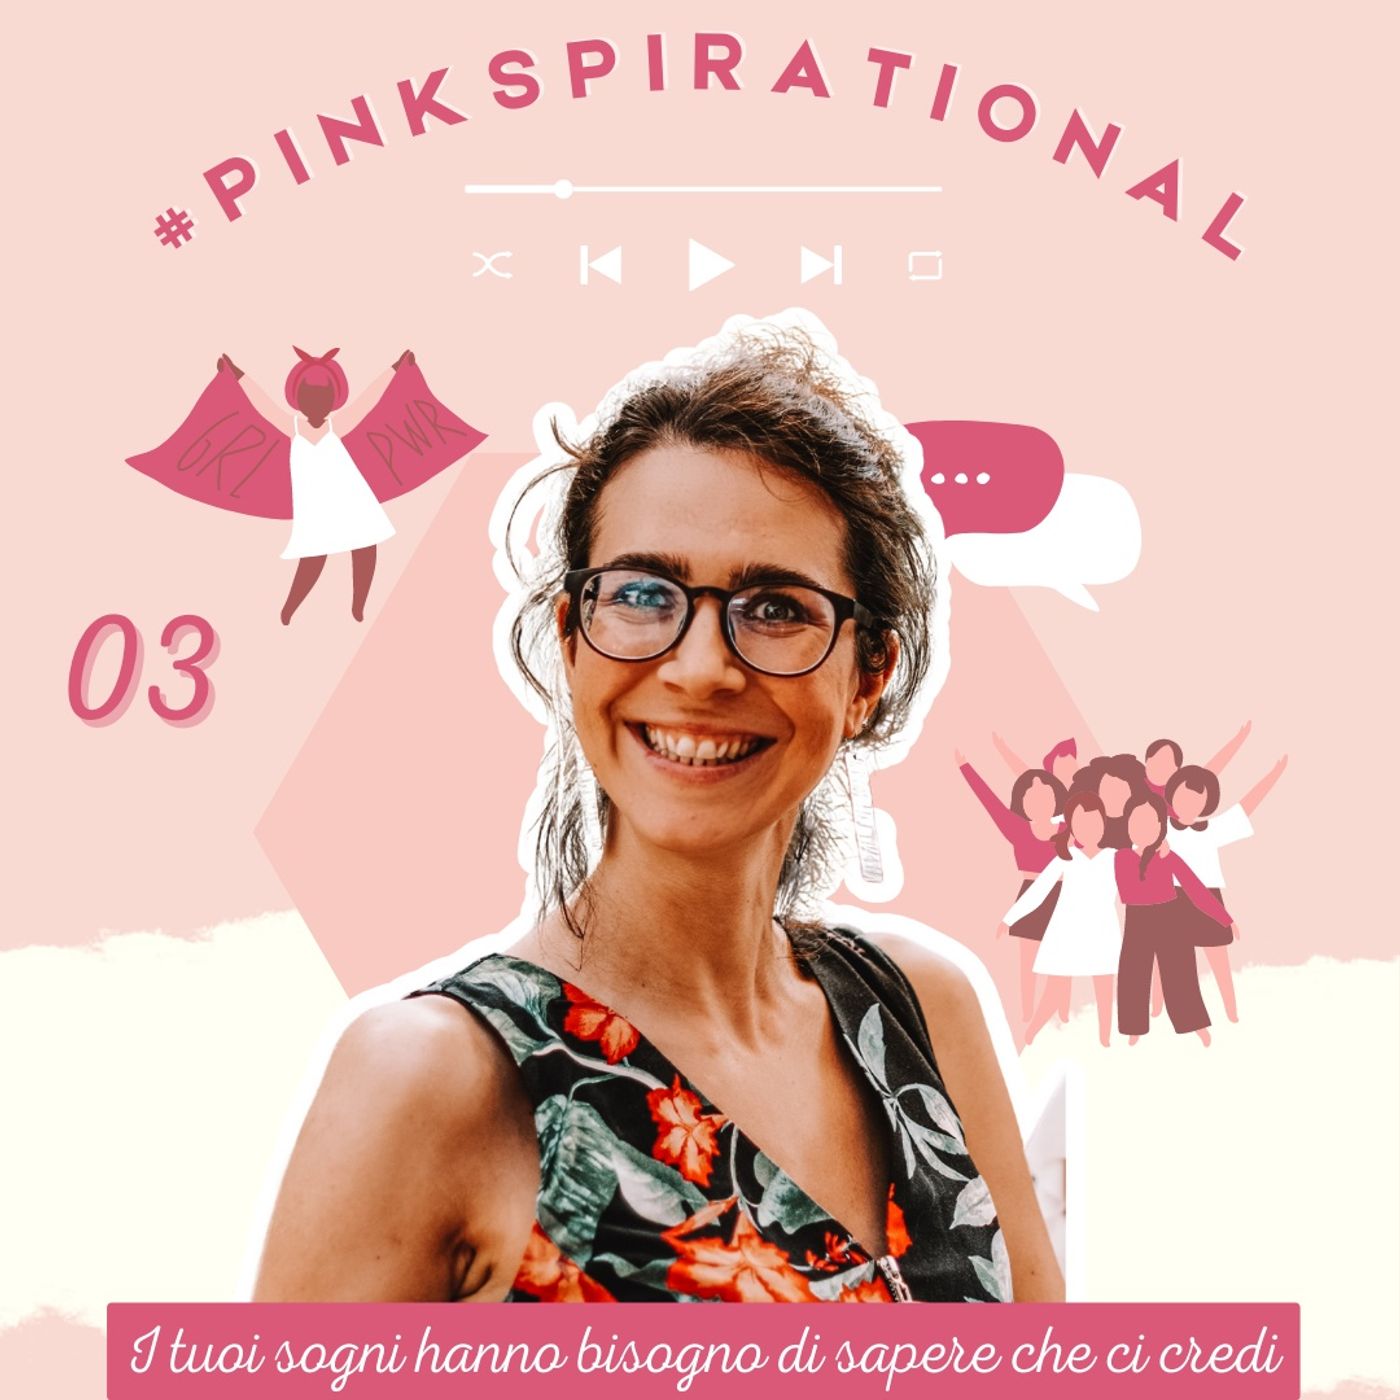 #Pinkspirational S01EP03 - Federica Albertin